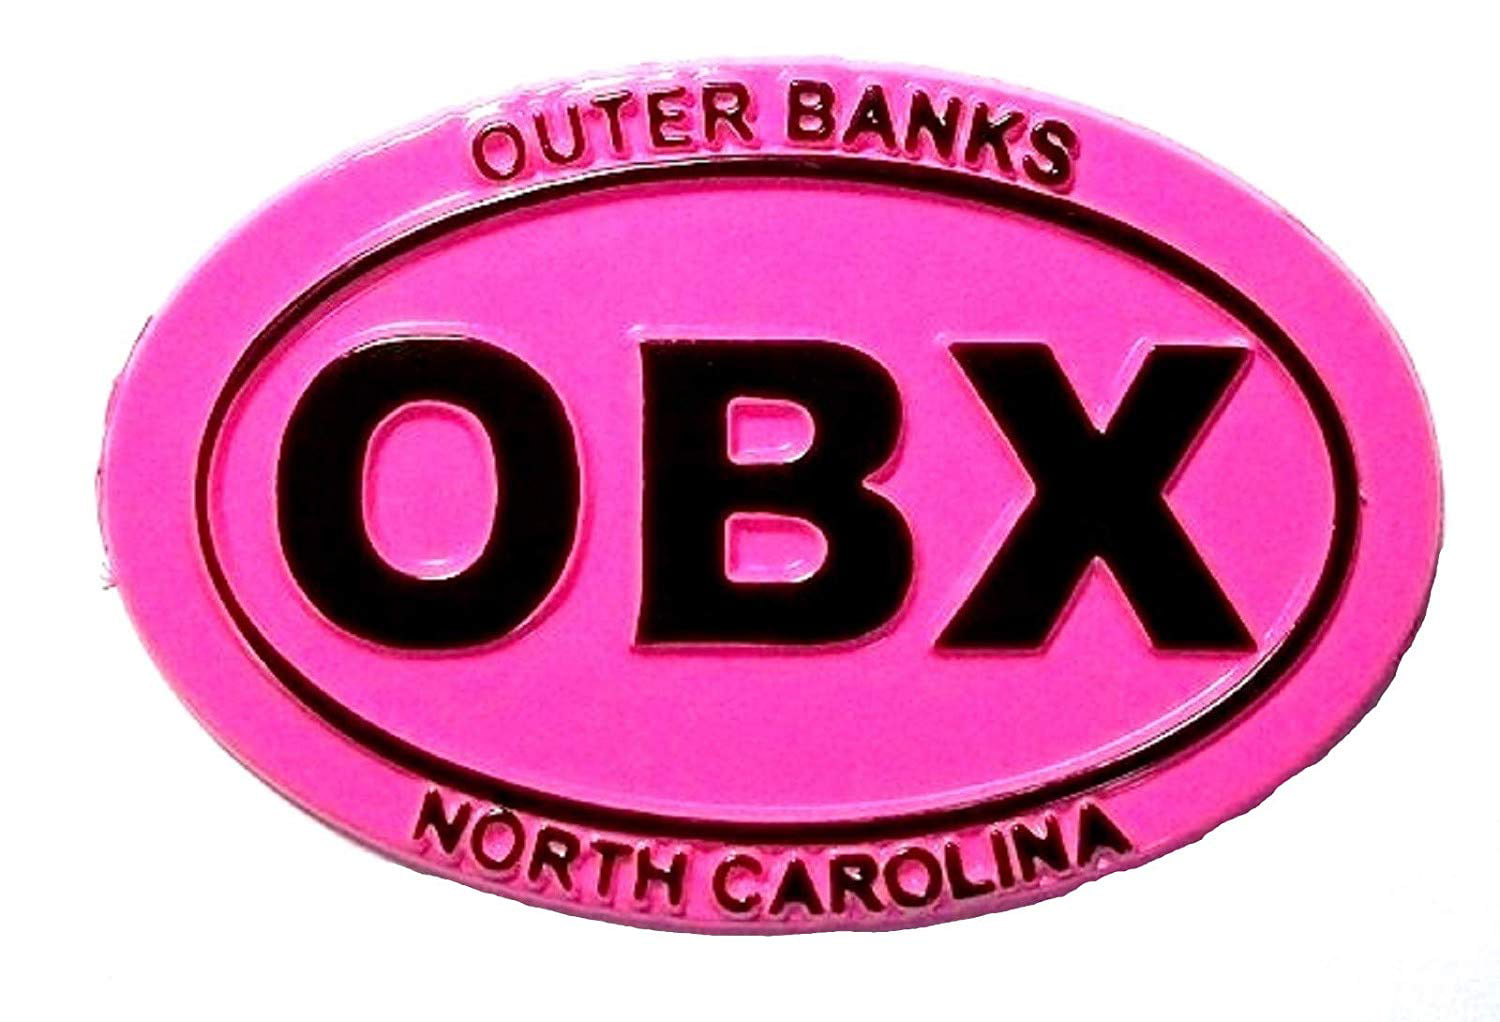 Outer Banks North Carolina Road Signs Foil Design Fridge Magnet 